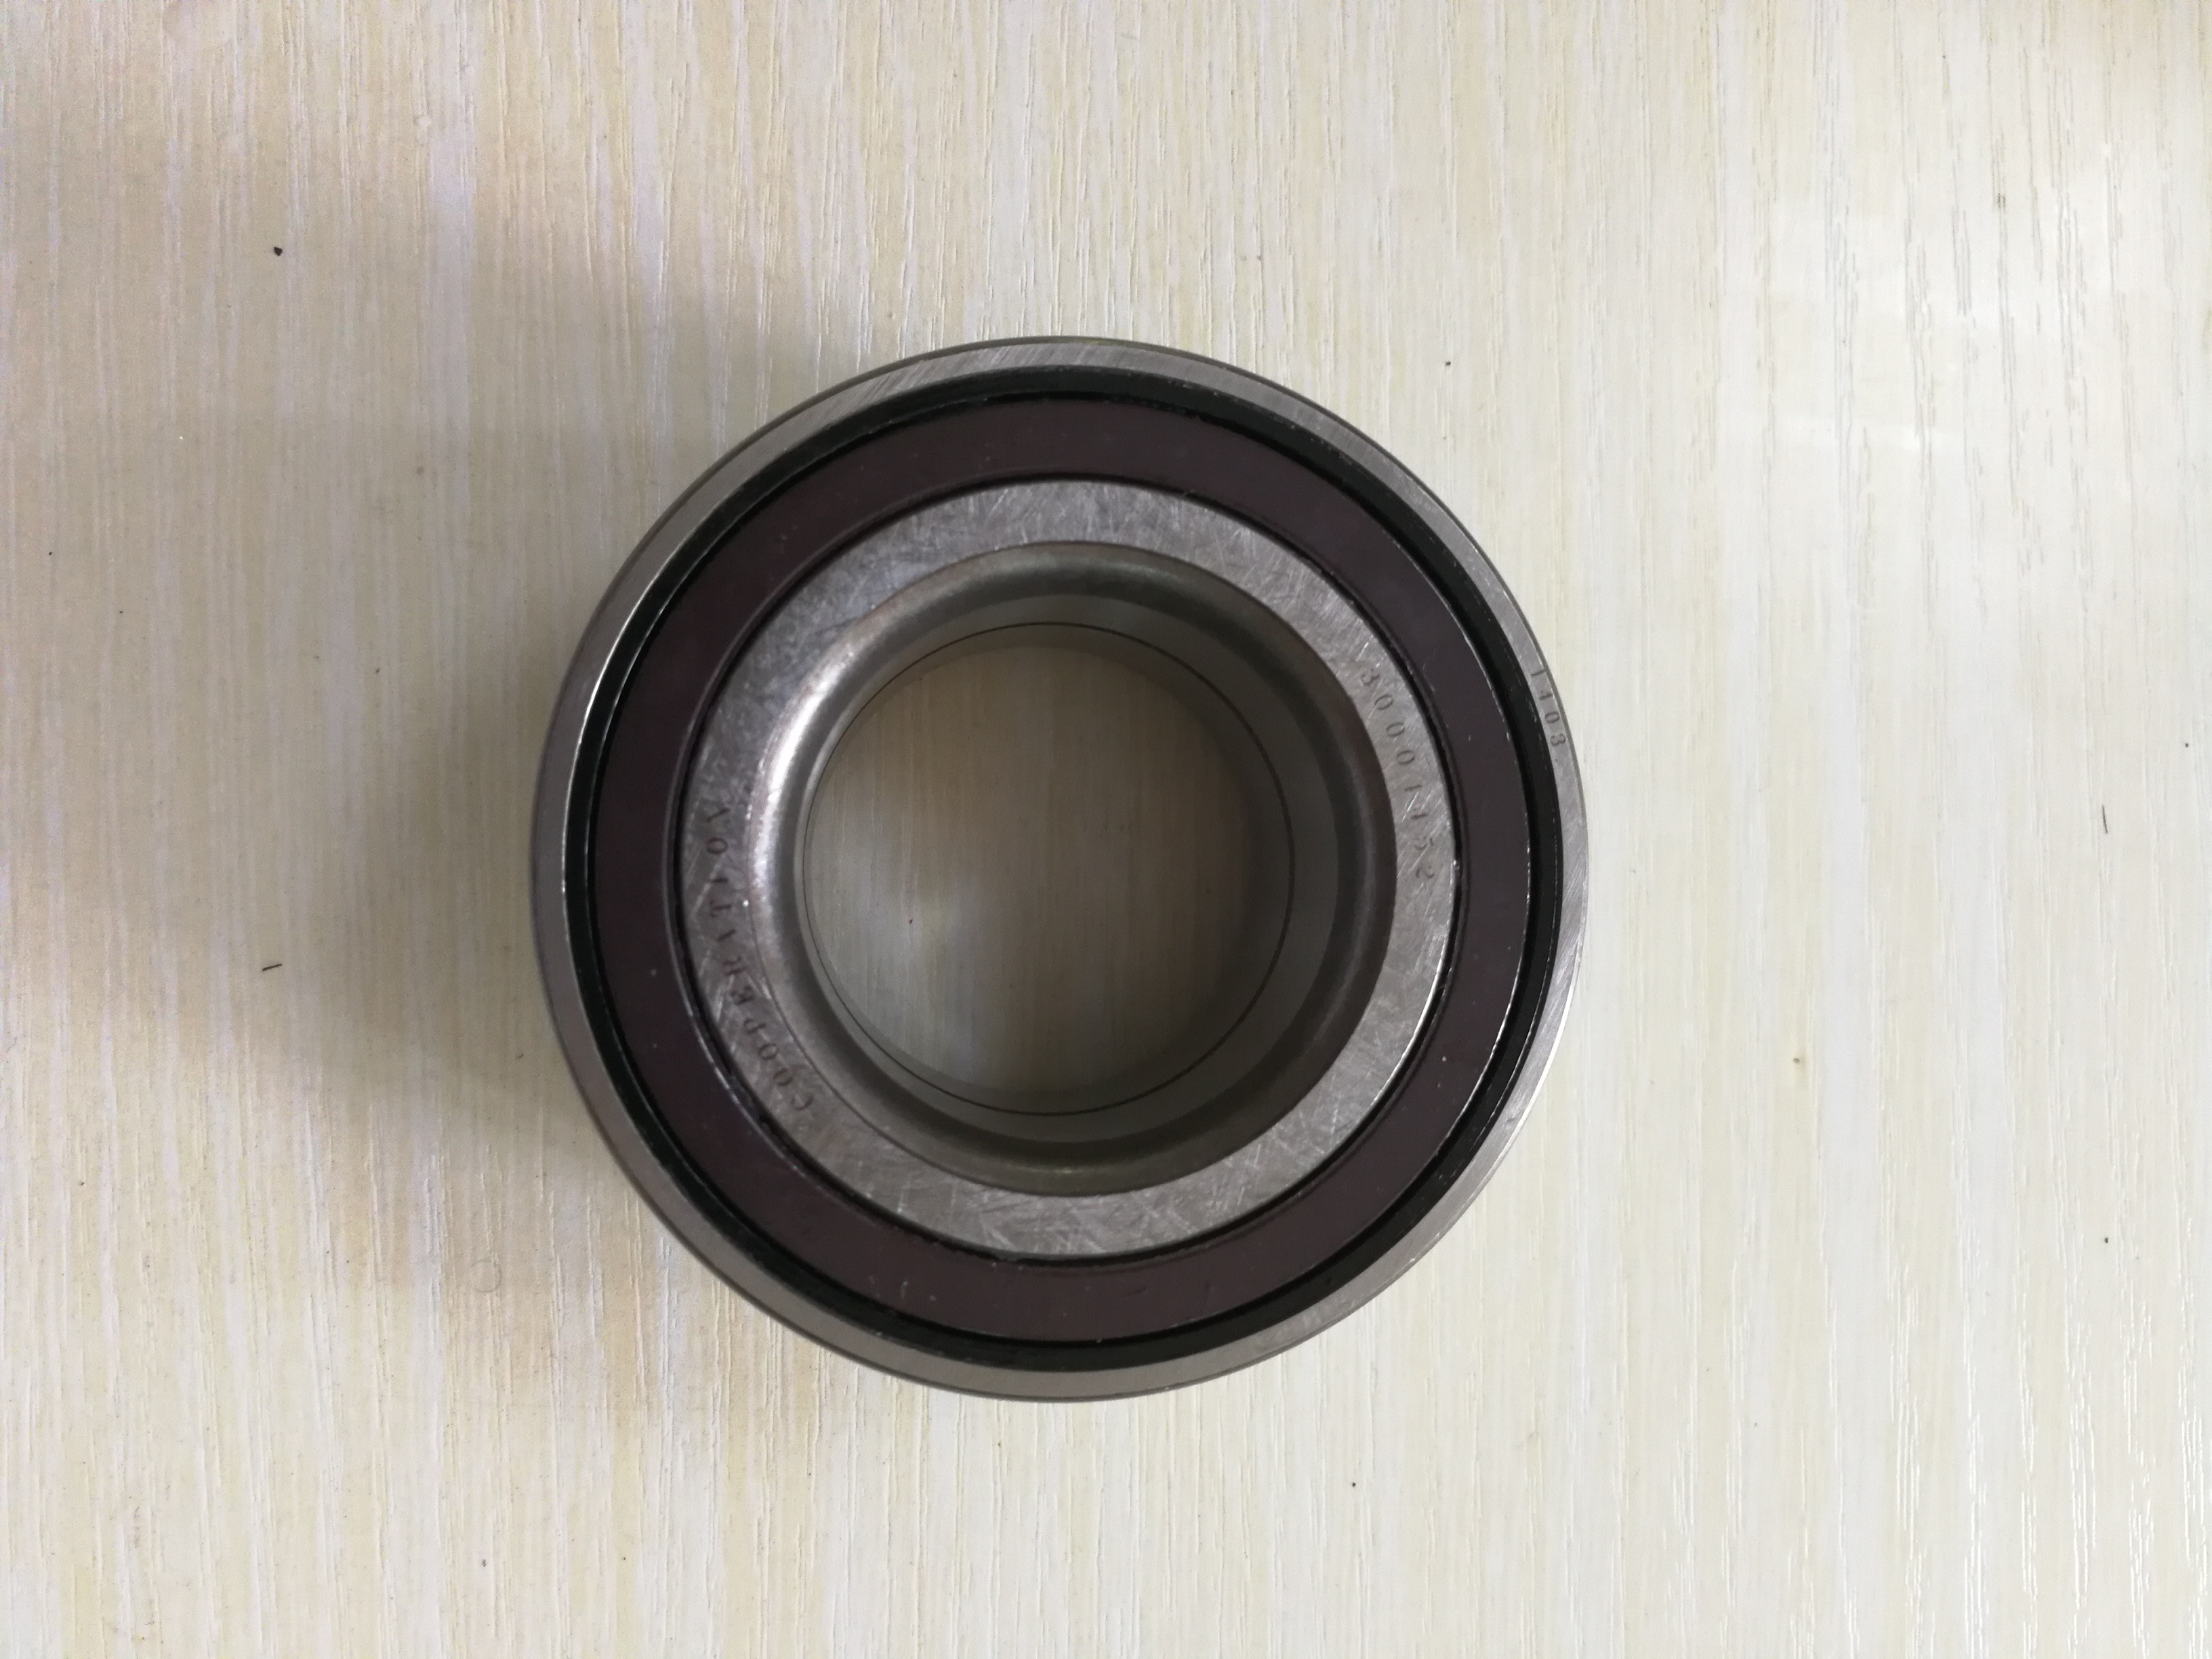 hub bearing